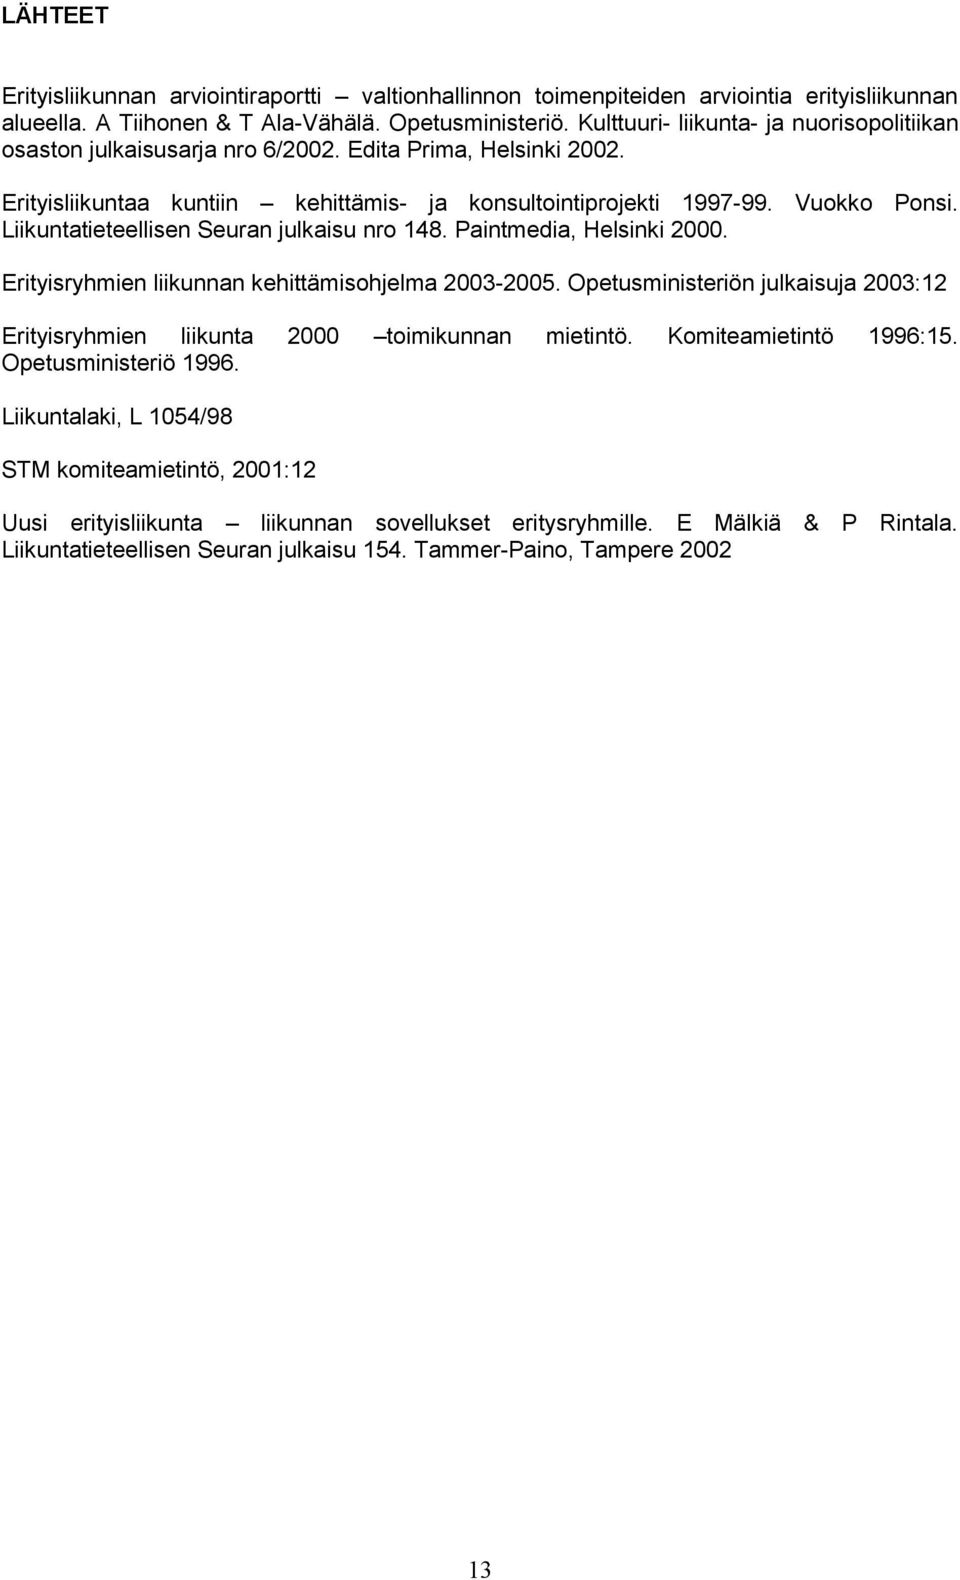 Liikuntatieteellisen Seuran julkaisu nro 148. Paintmedia, Helsinki 2000. Erityisryhmien liikunnan kehittämisohjelma 2003-2005.